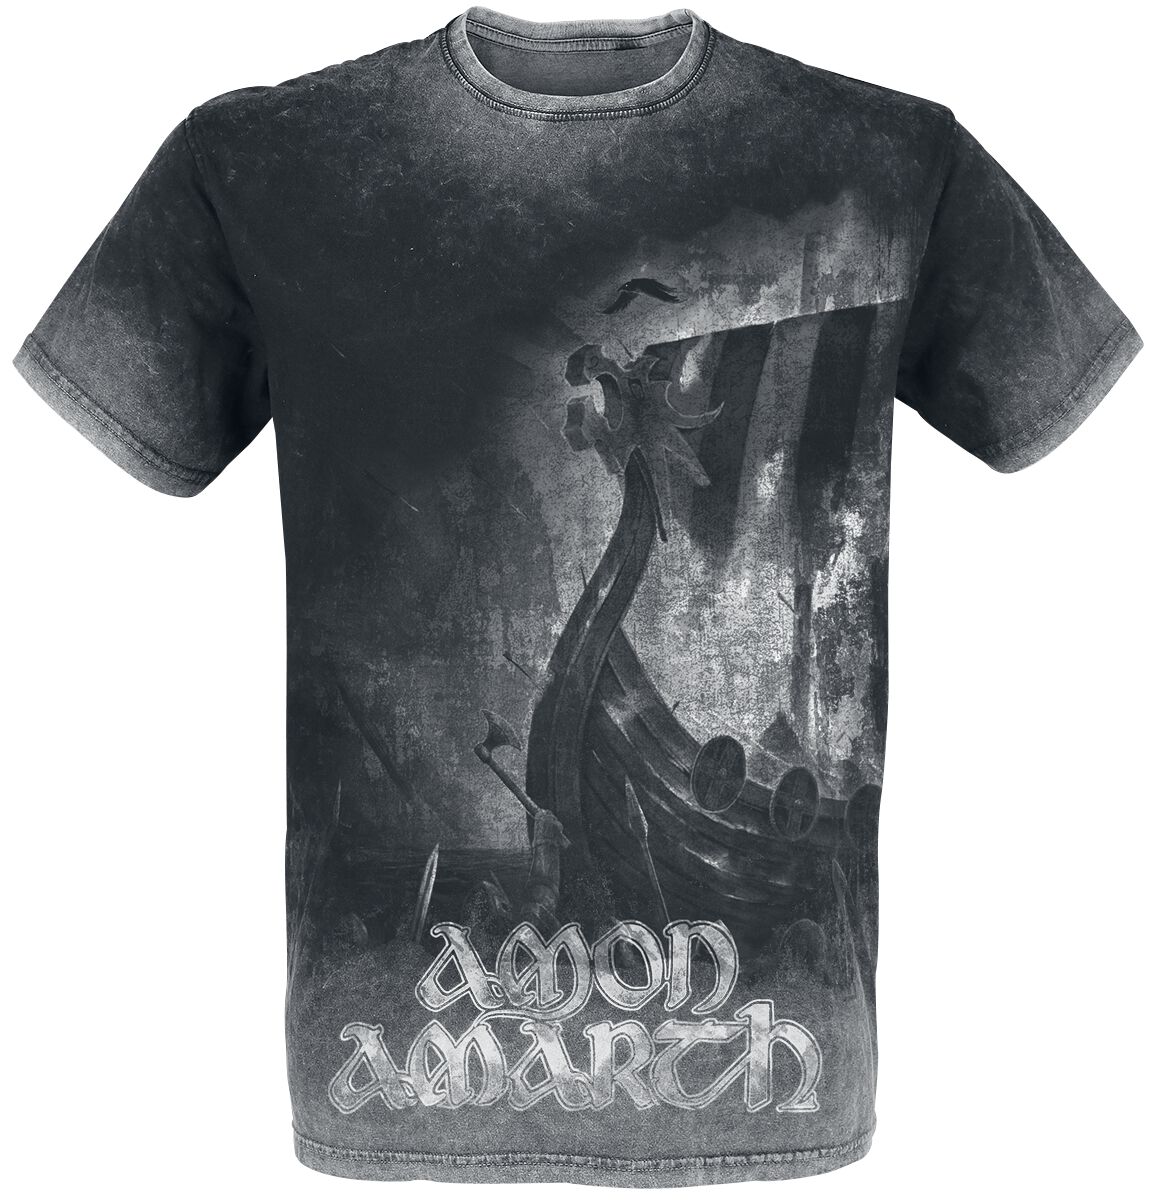 Amon Amarth T-Shirt - One Thousand Burning Arrows - M bis 4XL - für Männer - Größe L - charcoal  - EMP exklusives Merchandise!